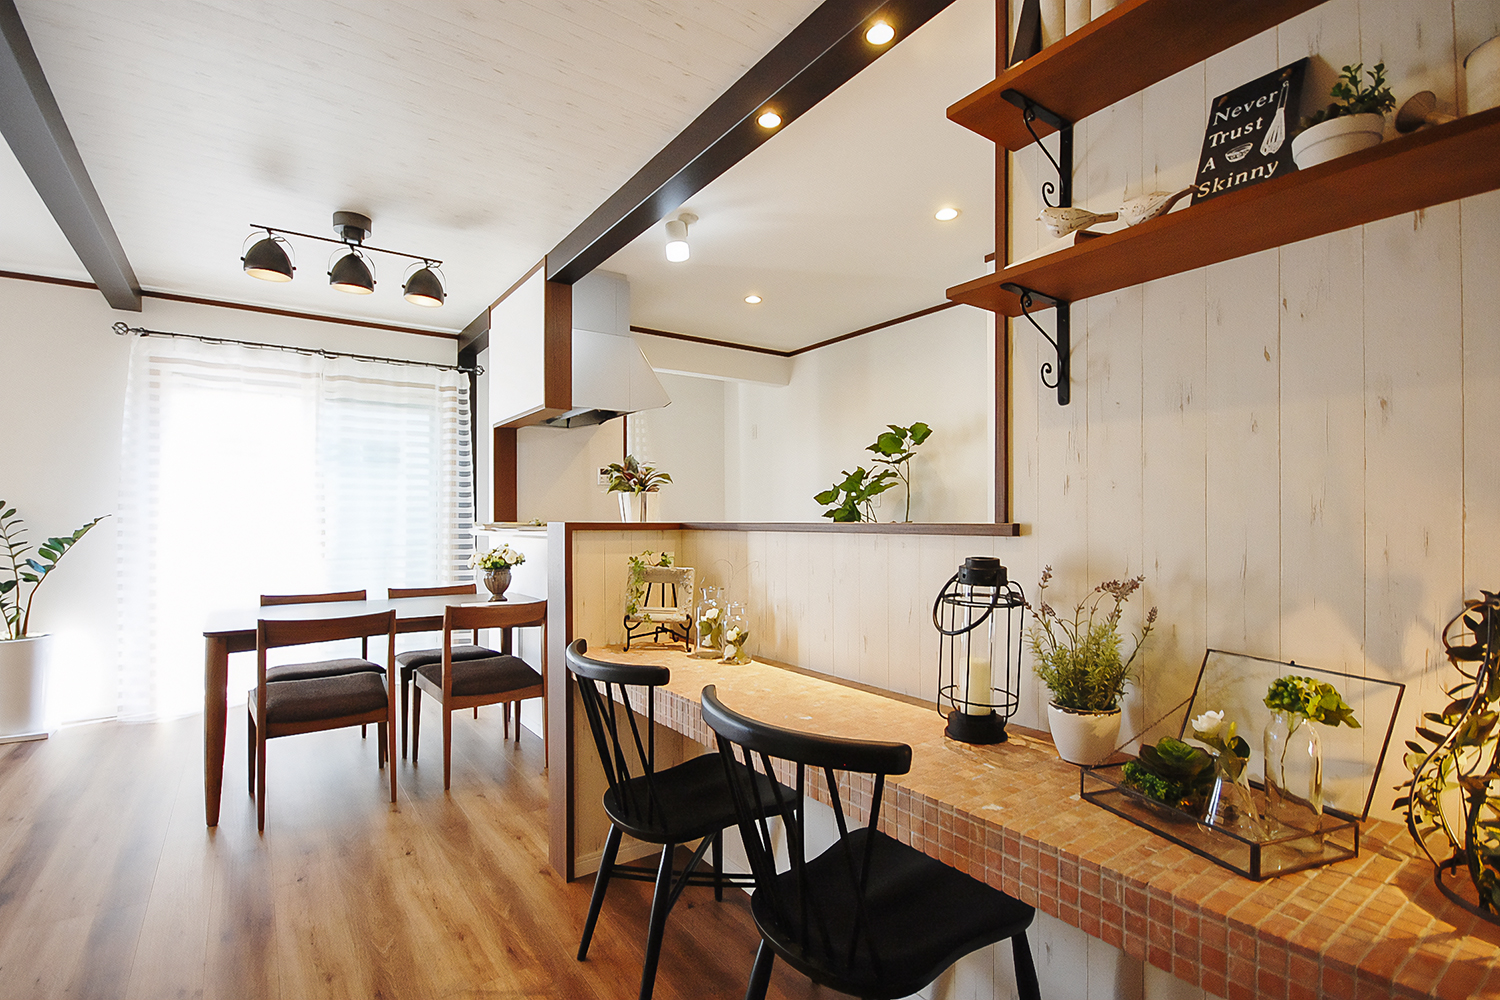 テラコッタカラーのタイル敷きタイルカウンターに、アーチ状にした下がり壁が可愛いおうちカフェ